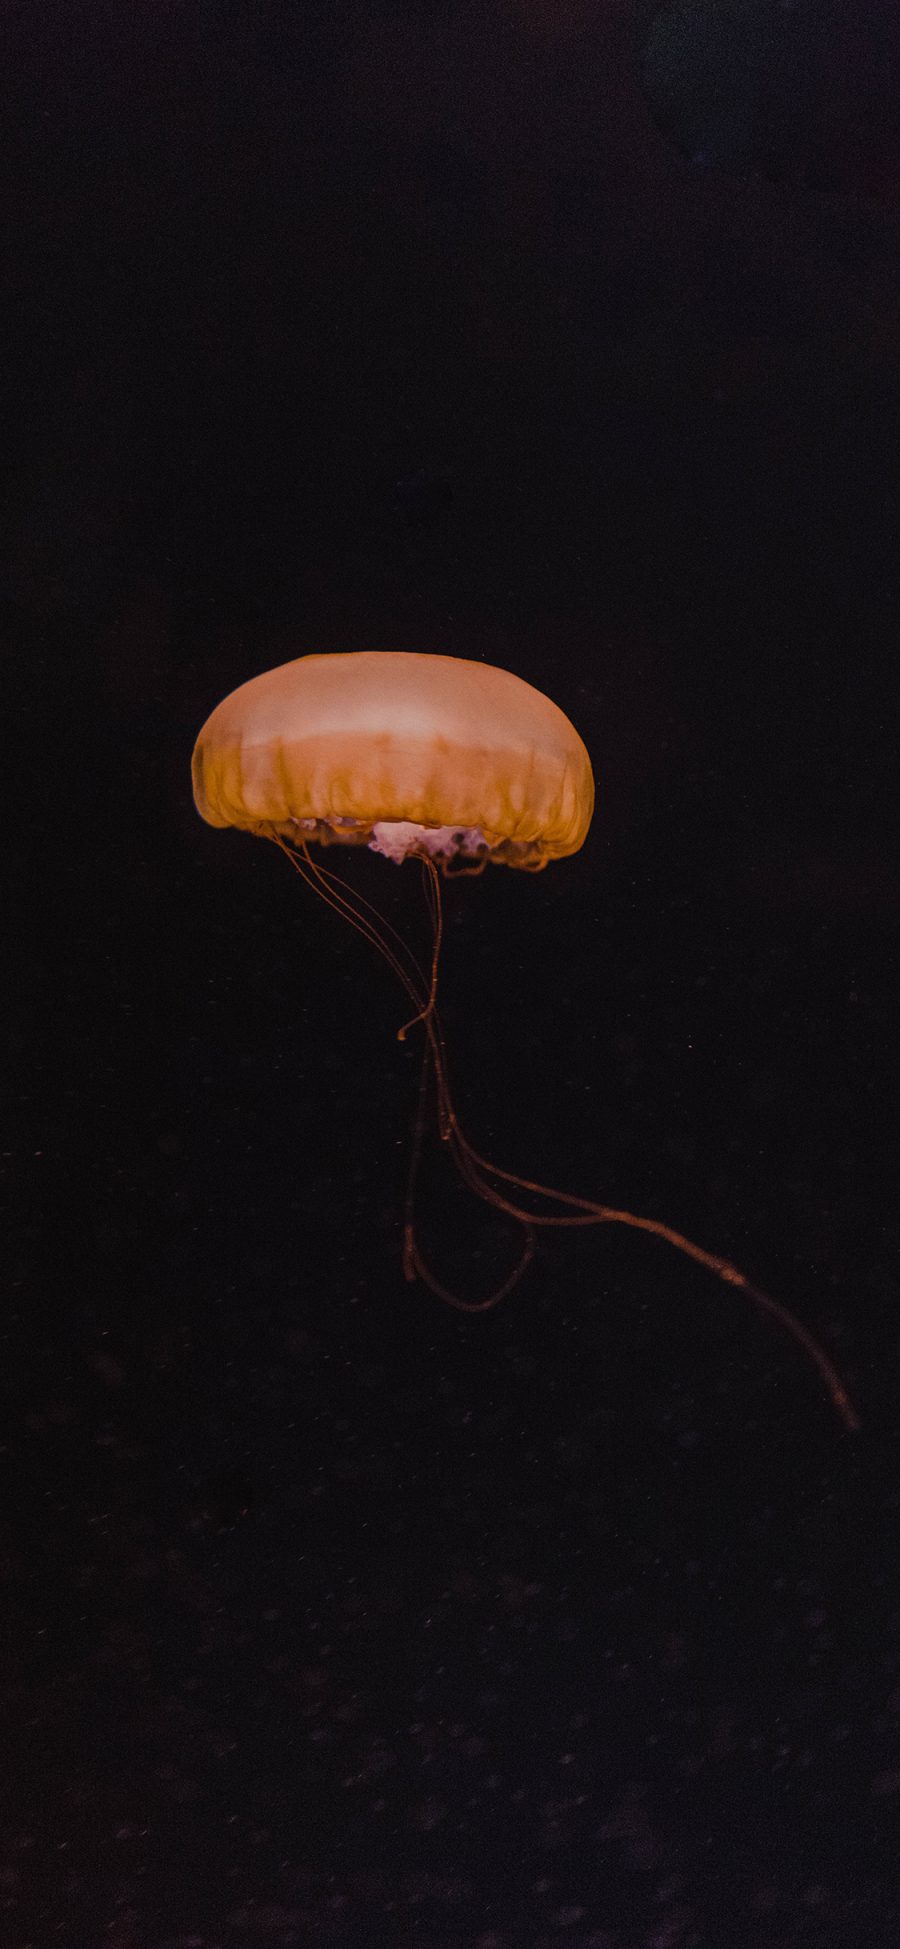 [2436×1125]水母 海洋生物 黑色 游动 苹果手机壁纸图片